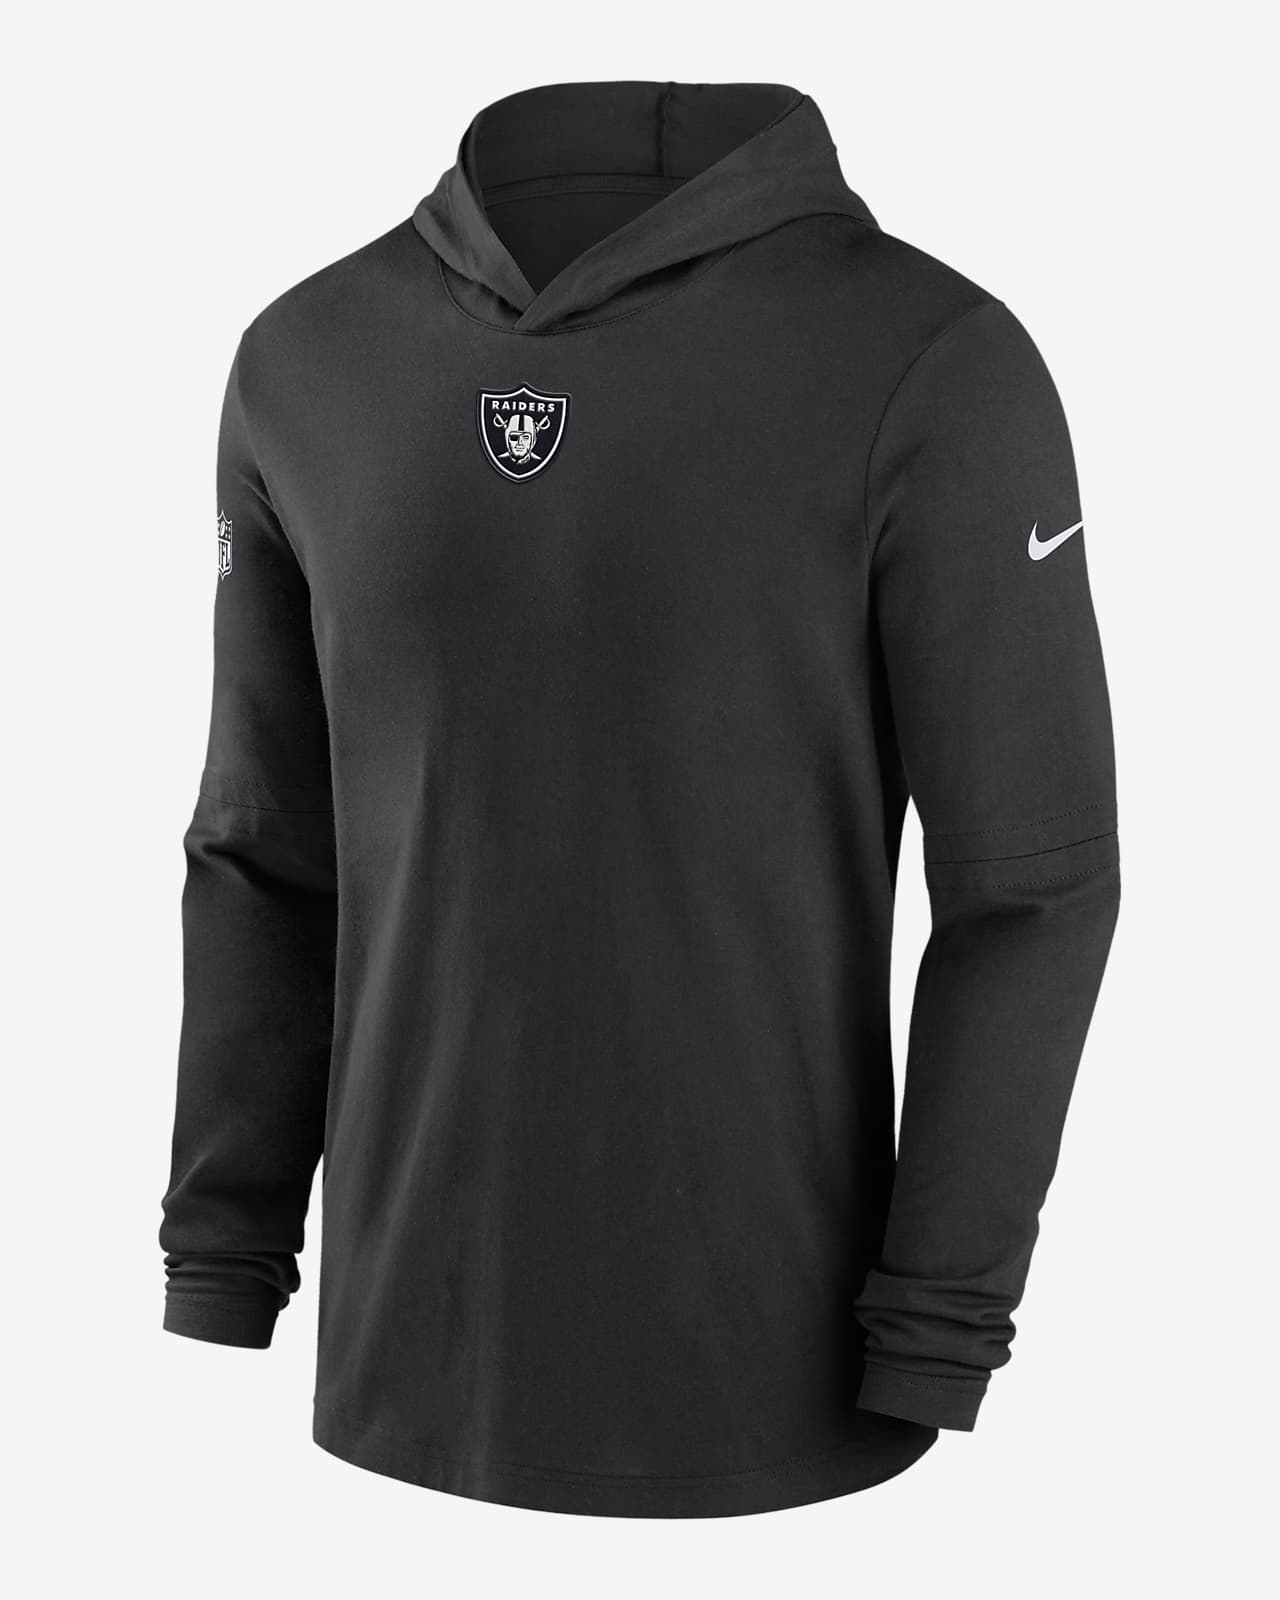 Las Vegas Raiders Nike On Field Dri Fit Black Hoodie Sweatshirt